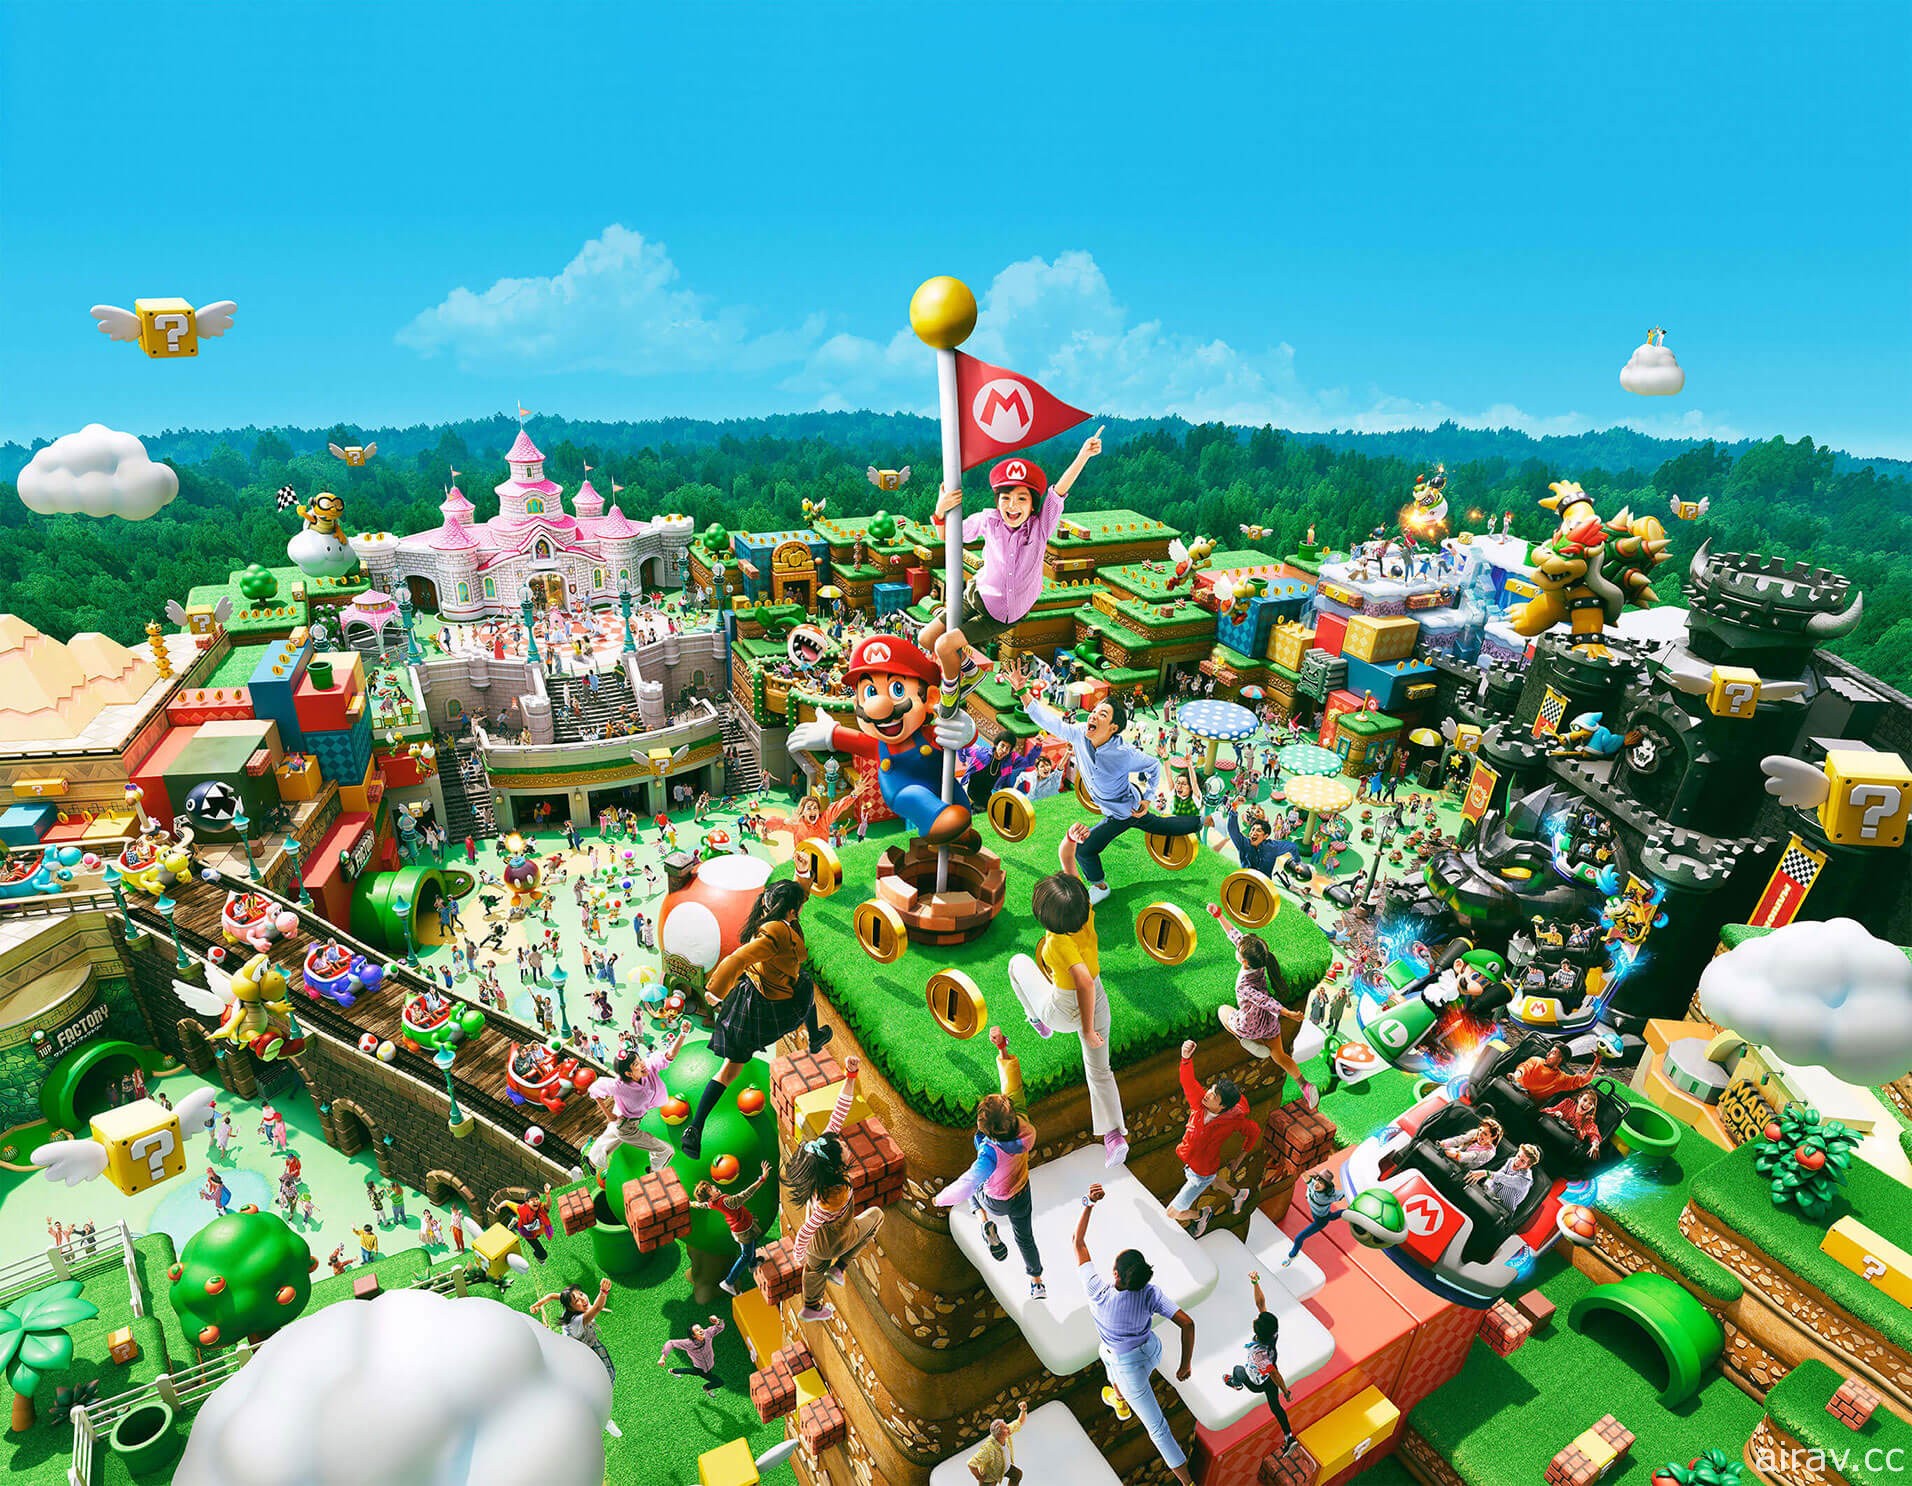 夢幻電玩樂園「超級任天堂世界」官方網站開張 詳細介紹園內各項遊樂設施